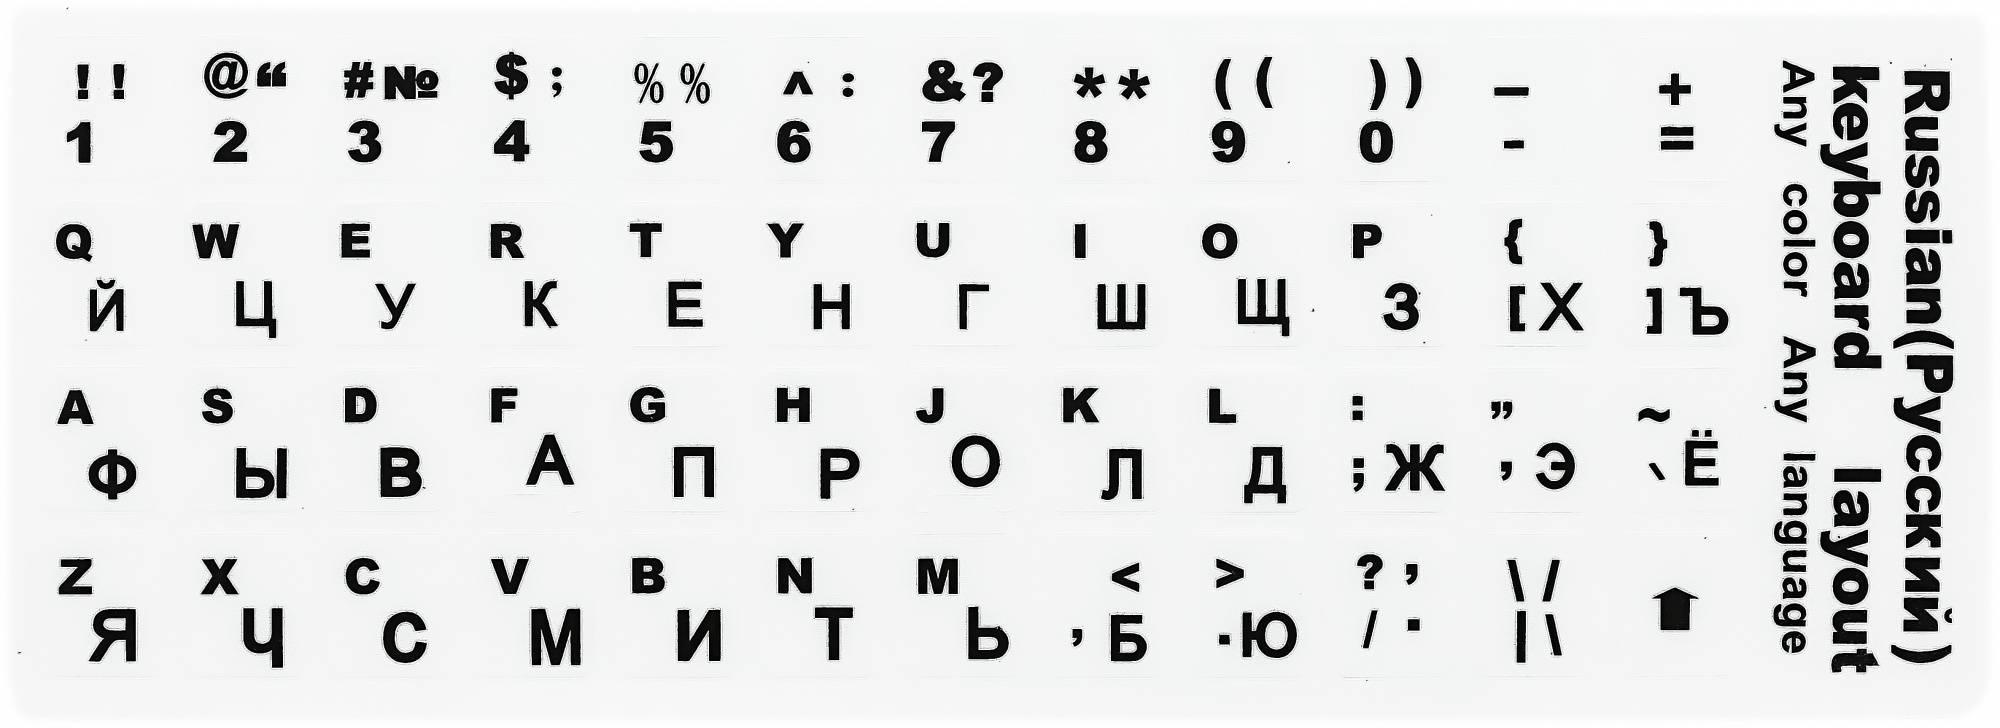 Наклейки для клавиатуры S1 , цвет русских букв: черный